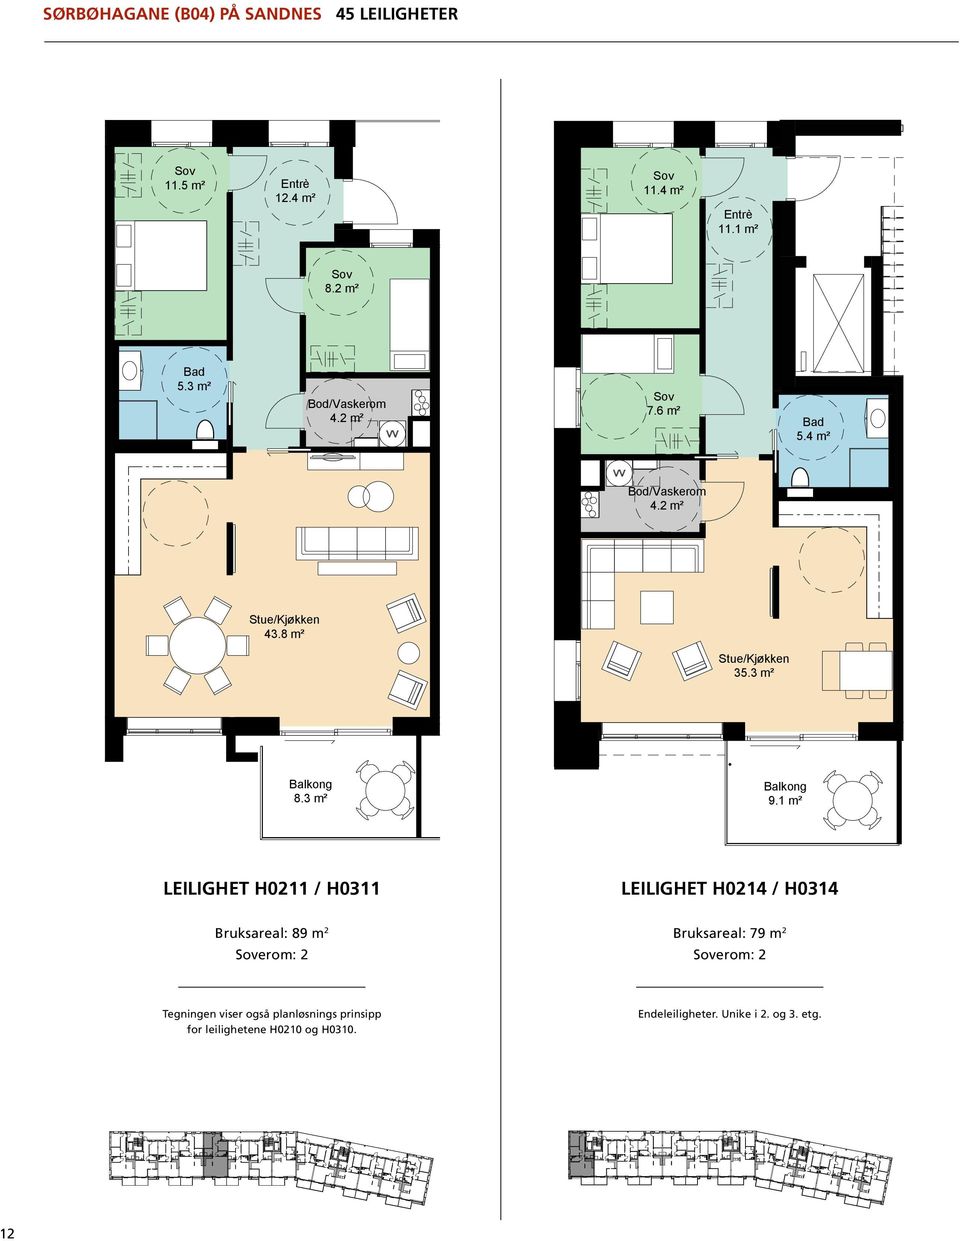 3 m² Tegningen viser også planløsnings prinsipp for leilighetene H0210 og H0310. Endeleiligheter. Unike i 2. og 3. etg. il. H 0210 & H 0310:.etg; pstilling; 12 AREALER -leil.